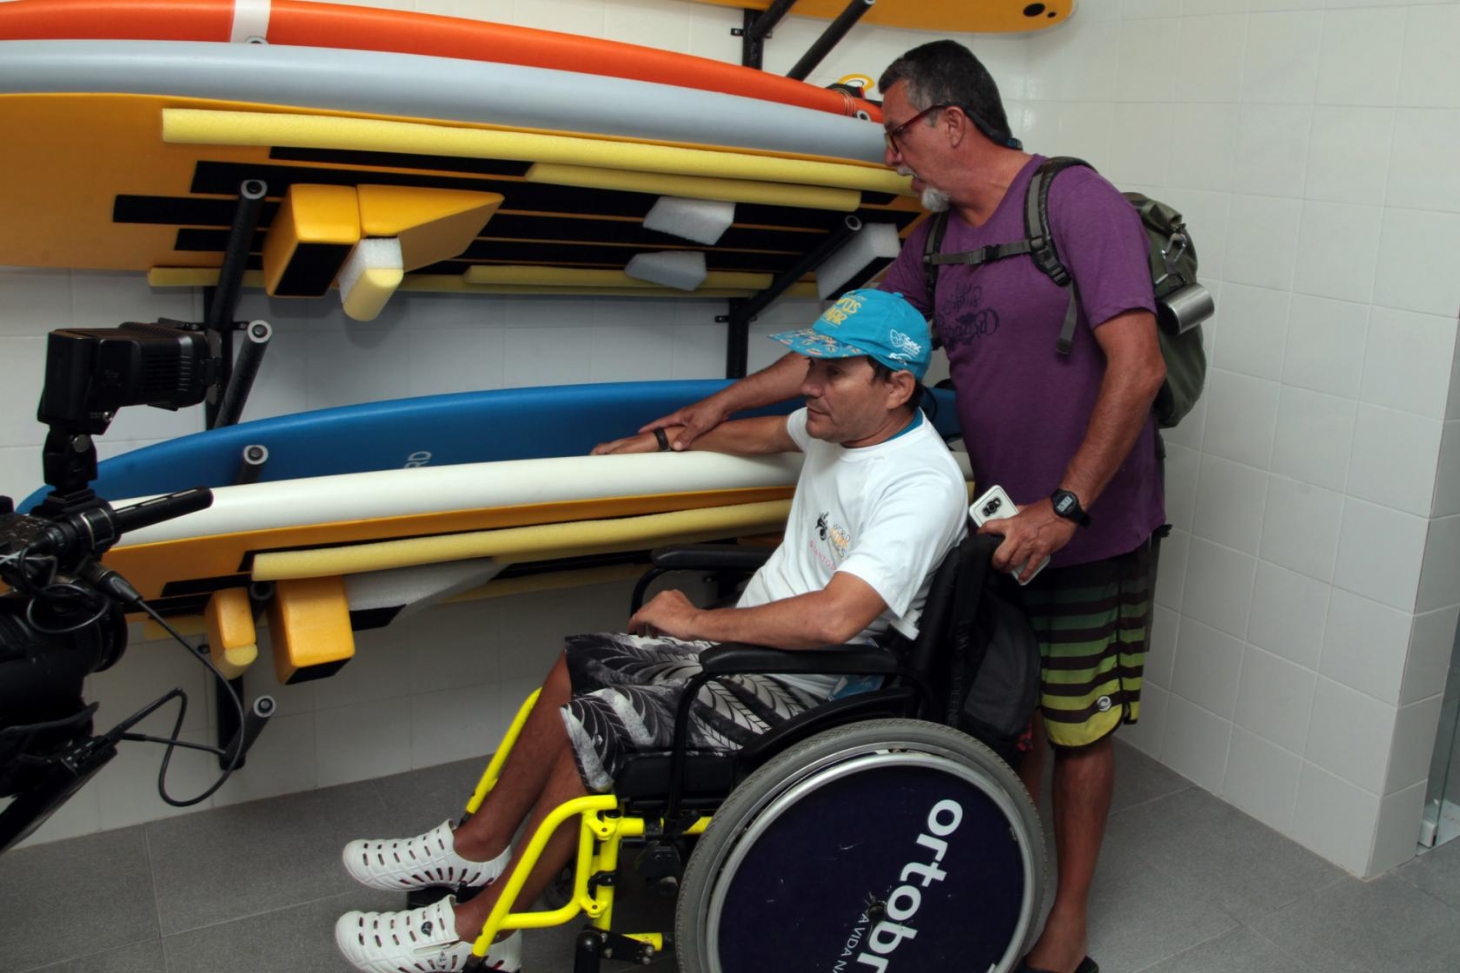 Escola de Surf Adaptado de Santos fica pronta em janeiro | Jornal da Orla